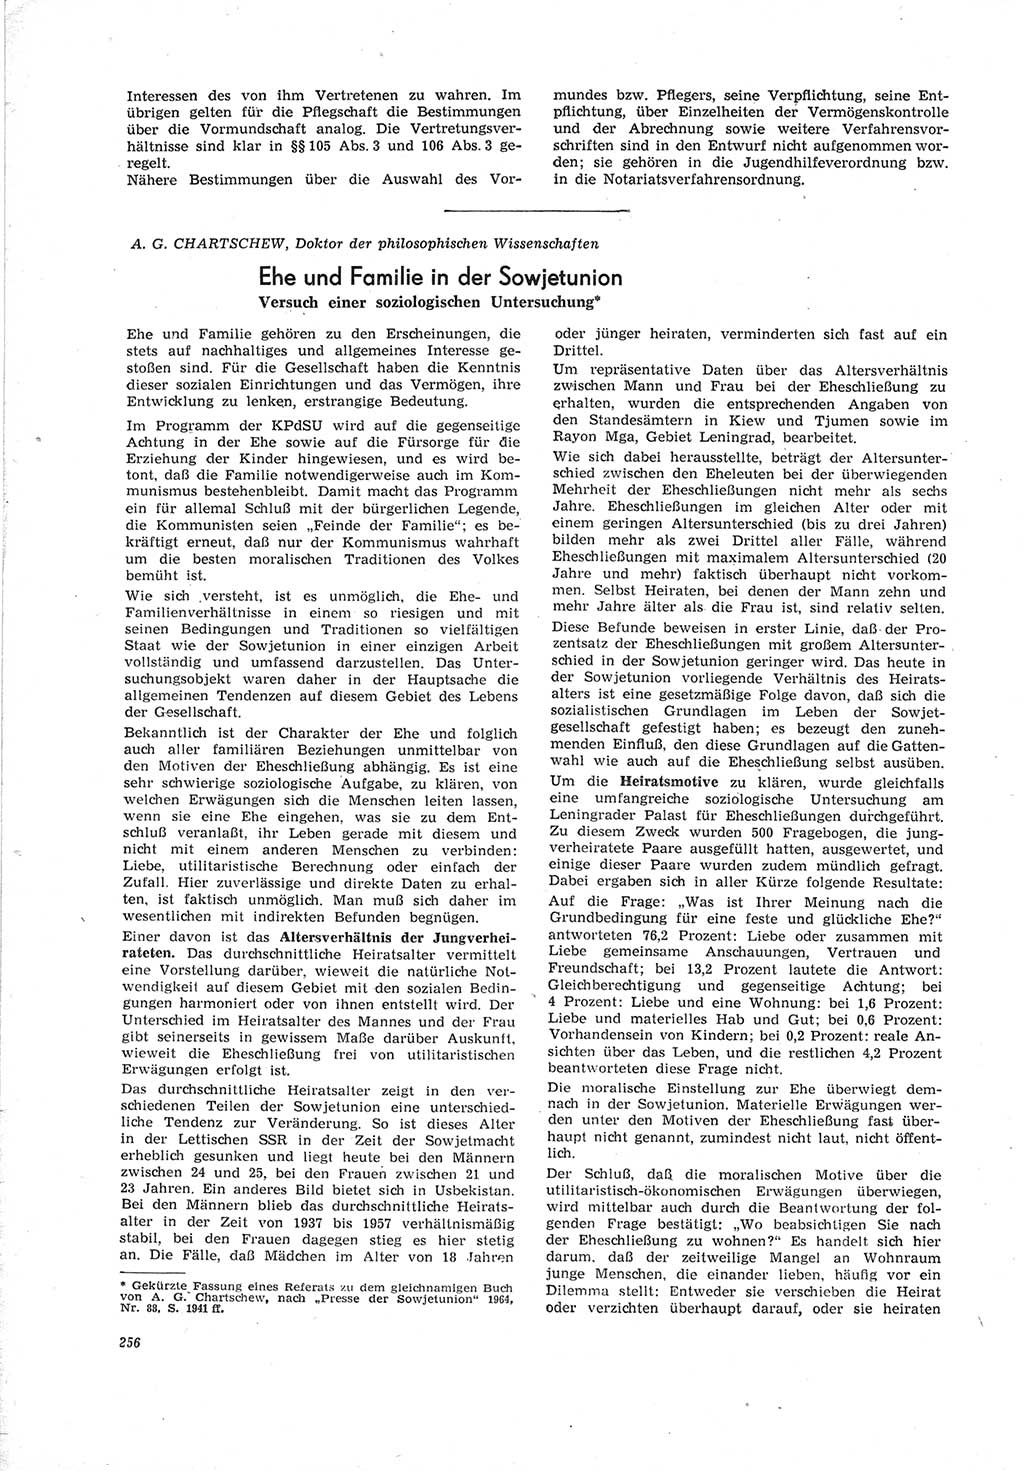 Neue Justiz (NJ), Zeitschrift für Recht und Rechtswissenschaft [Deutsche Demokratische Republik (DDR)], 19. Jahrgang 1965, Seite 256 (NJ DDR 1965, S. 256)